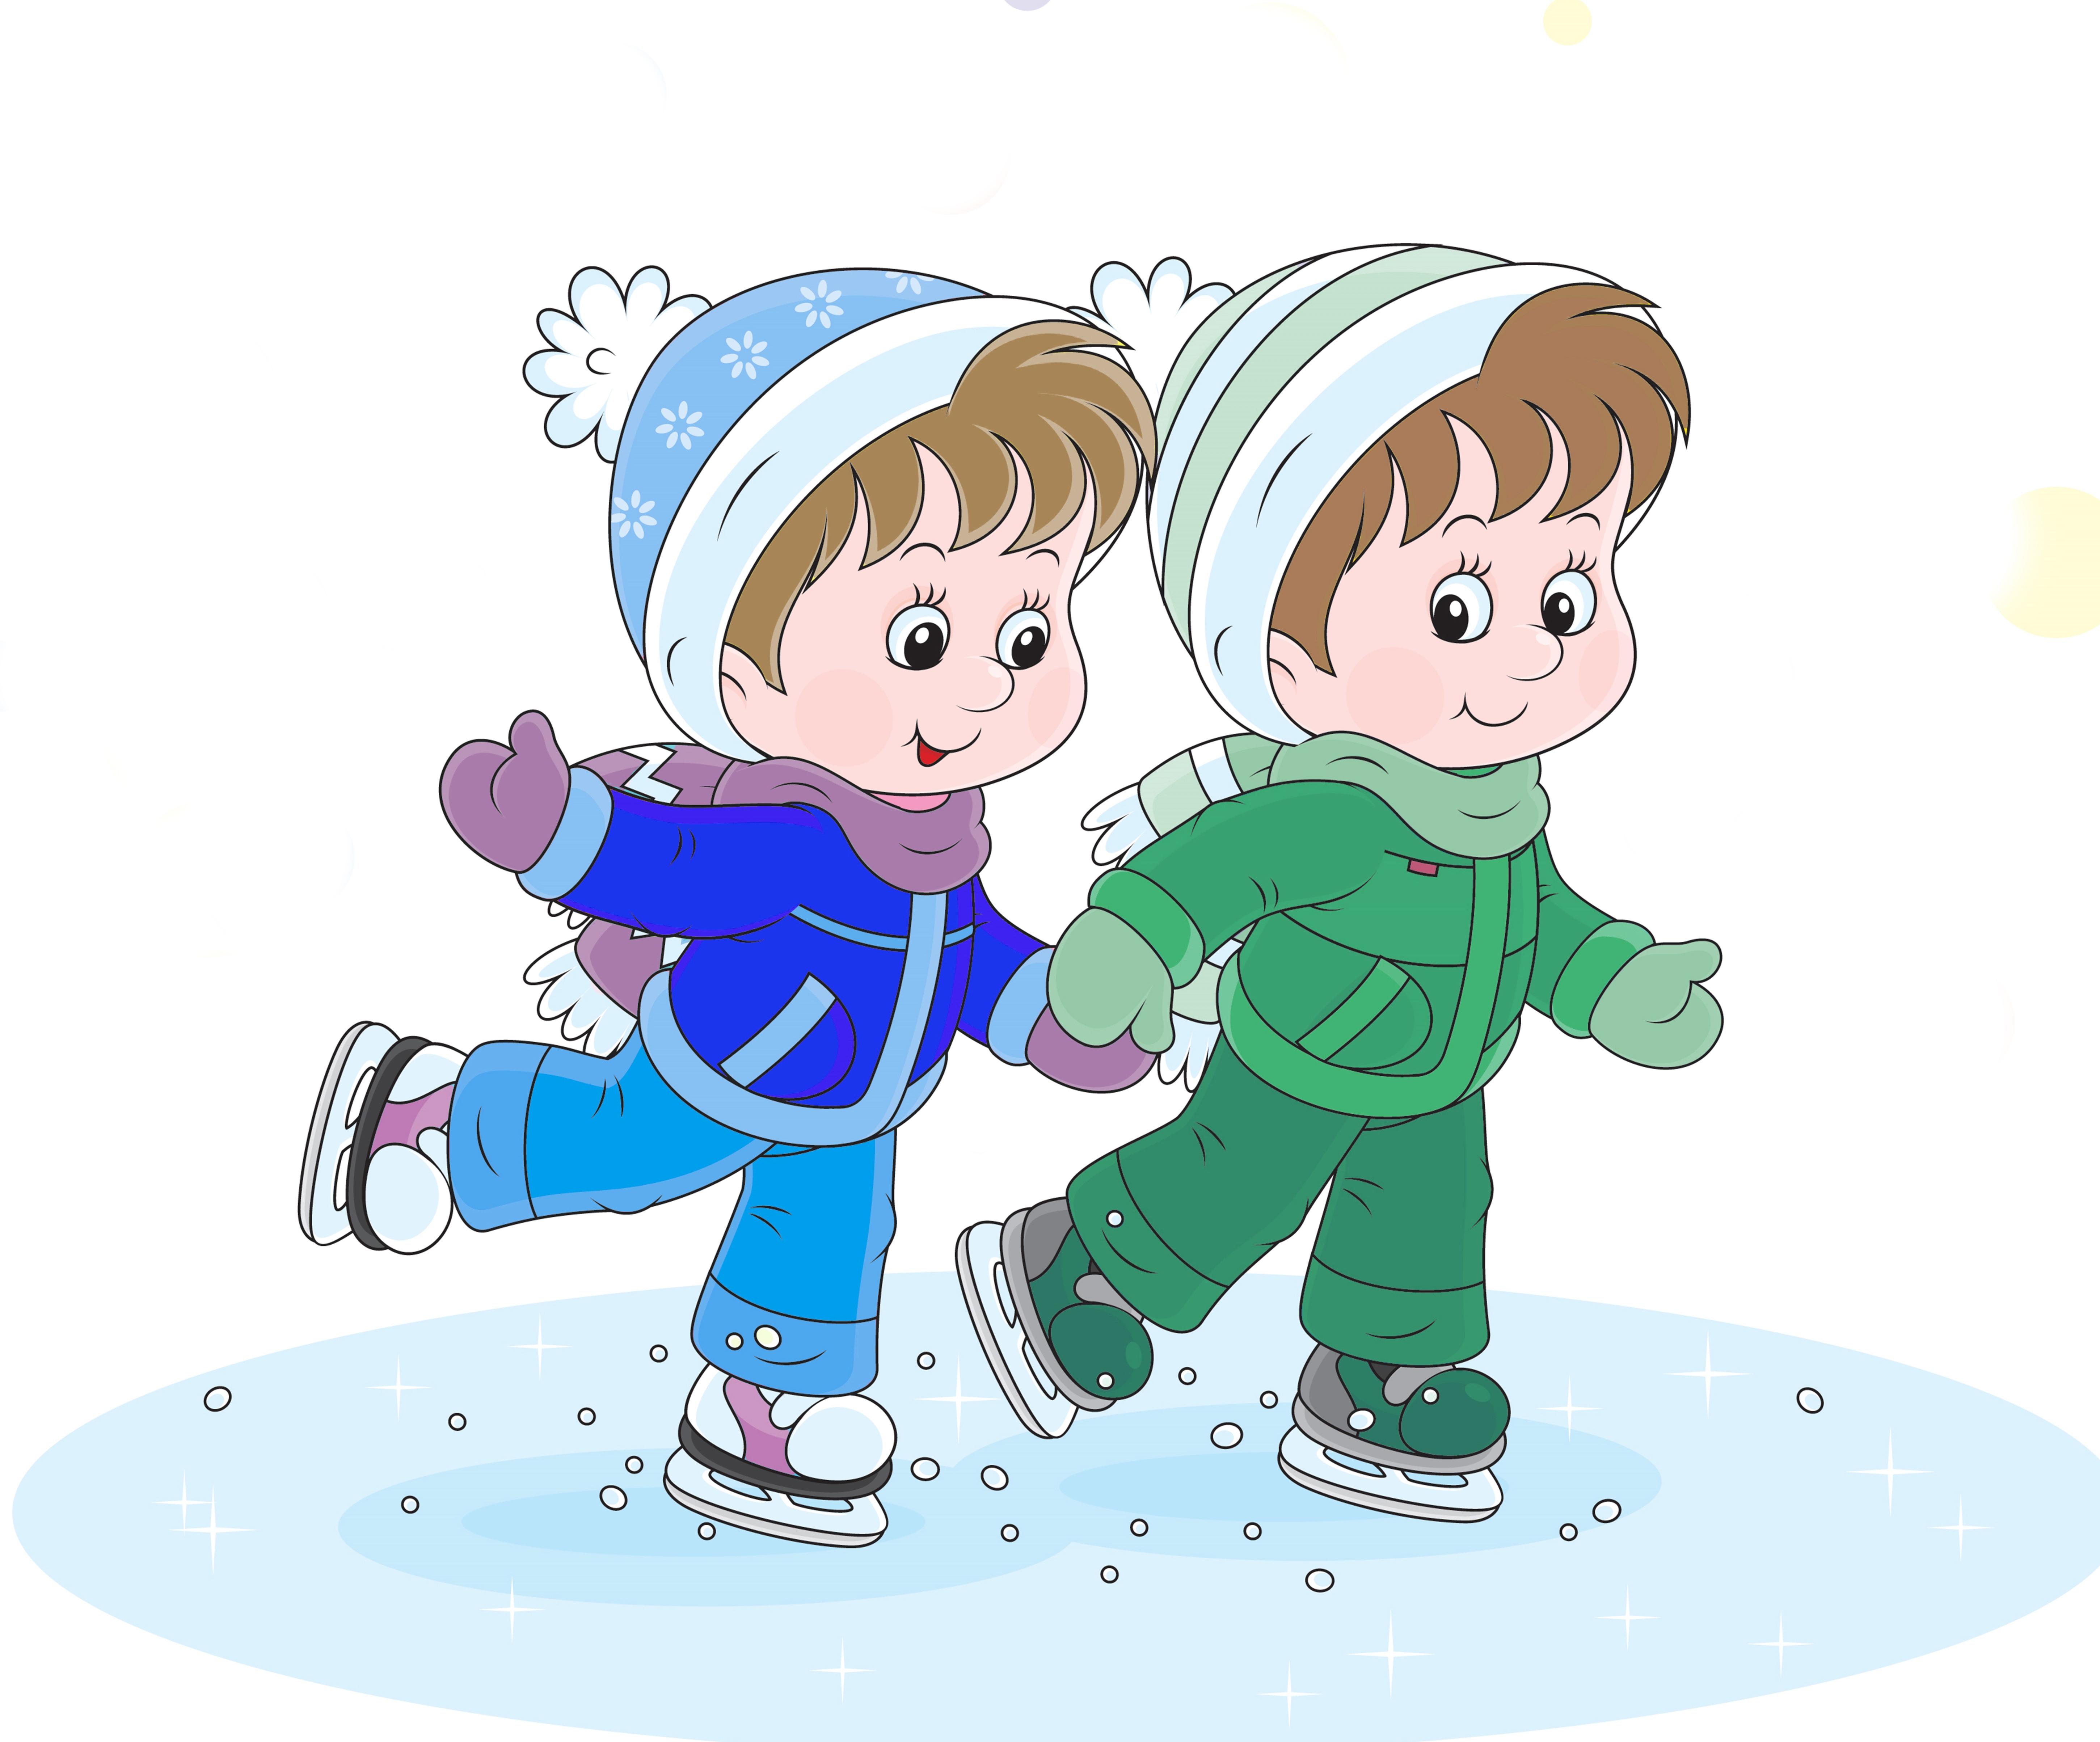 Ребята играли в снежки